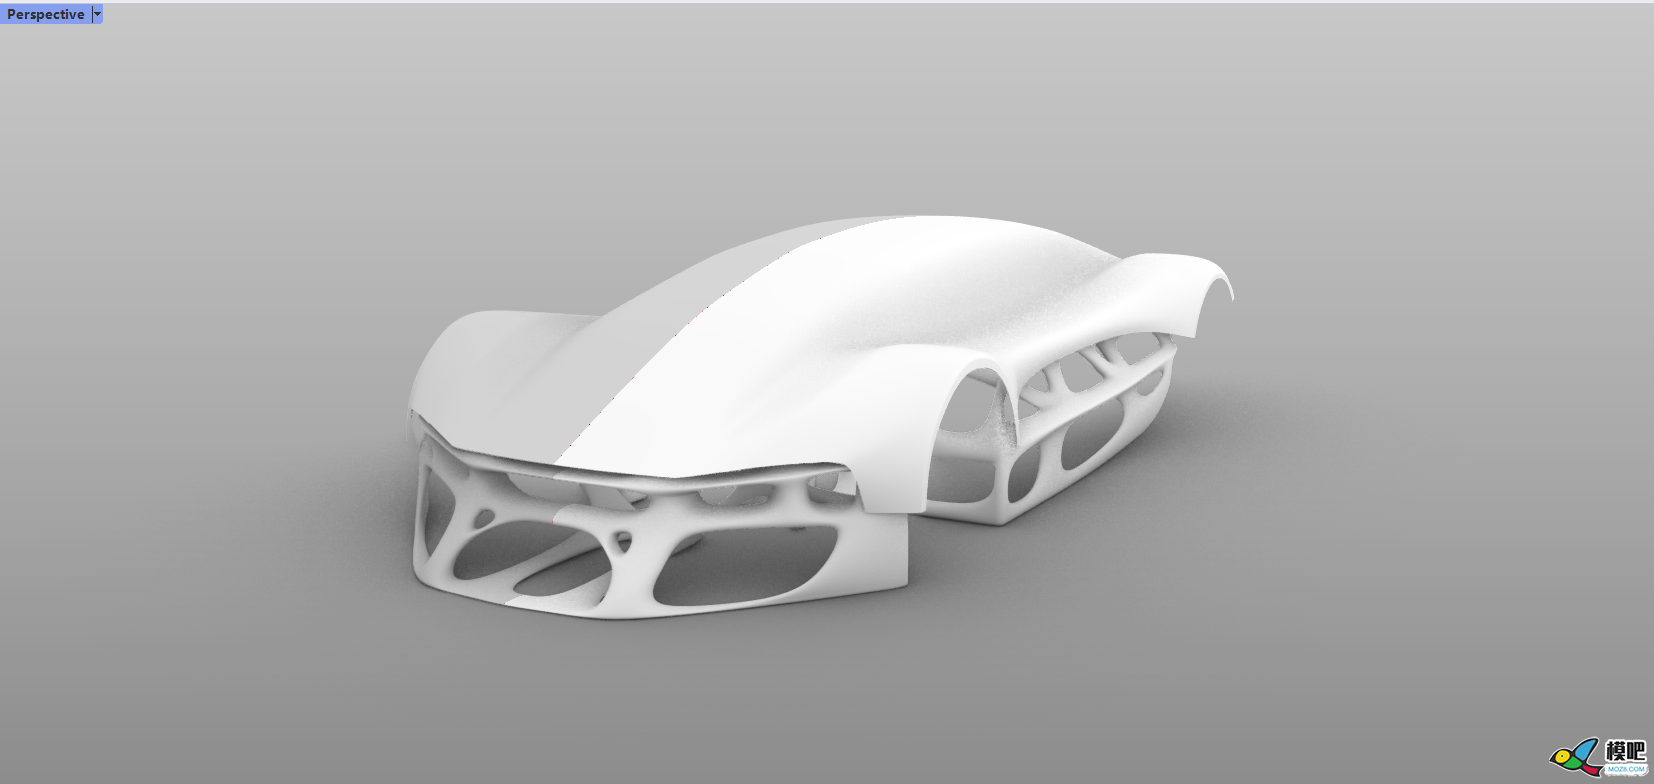 从零开始造车 概念RC跑车设计 连载「阿巴瑟创作日记」 模型,从零开始,外观设计,曲面建模,细分曲面 作者:机械体阿巴瑟 4247 